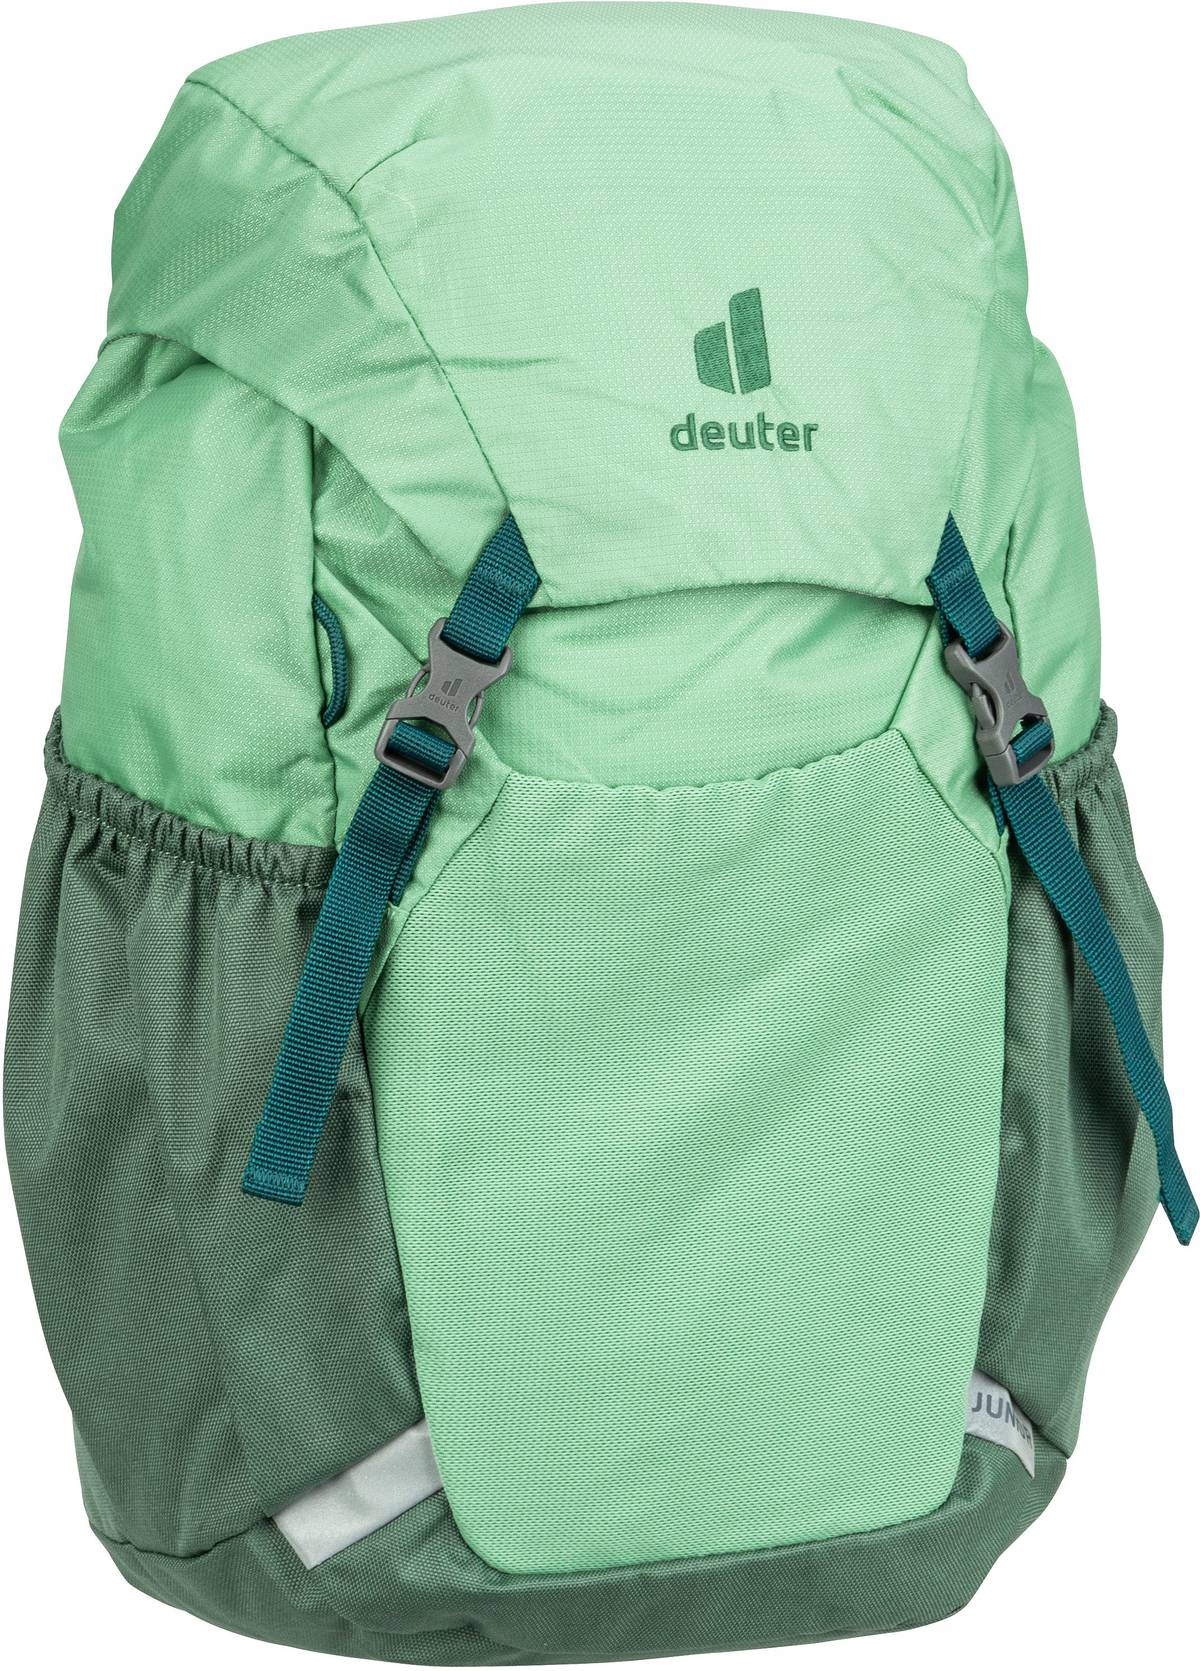 Deuter Junior  in Grün (18 Liter), Rucksack / Backpack von Deuter